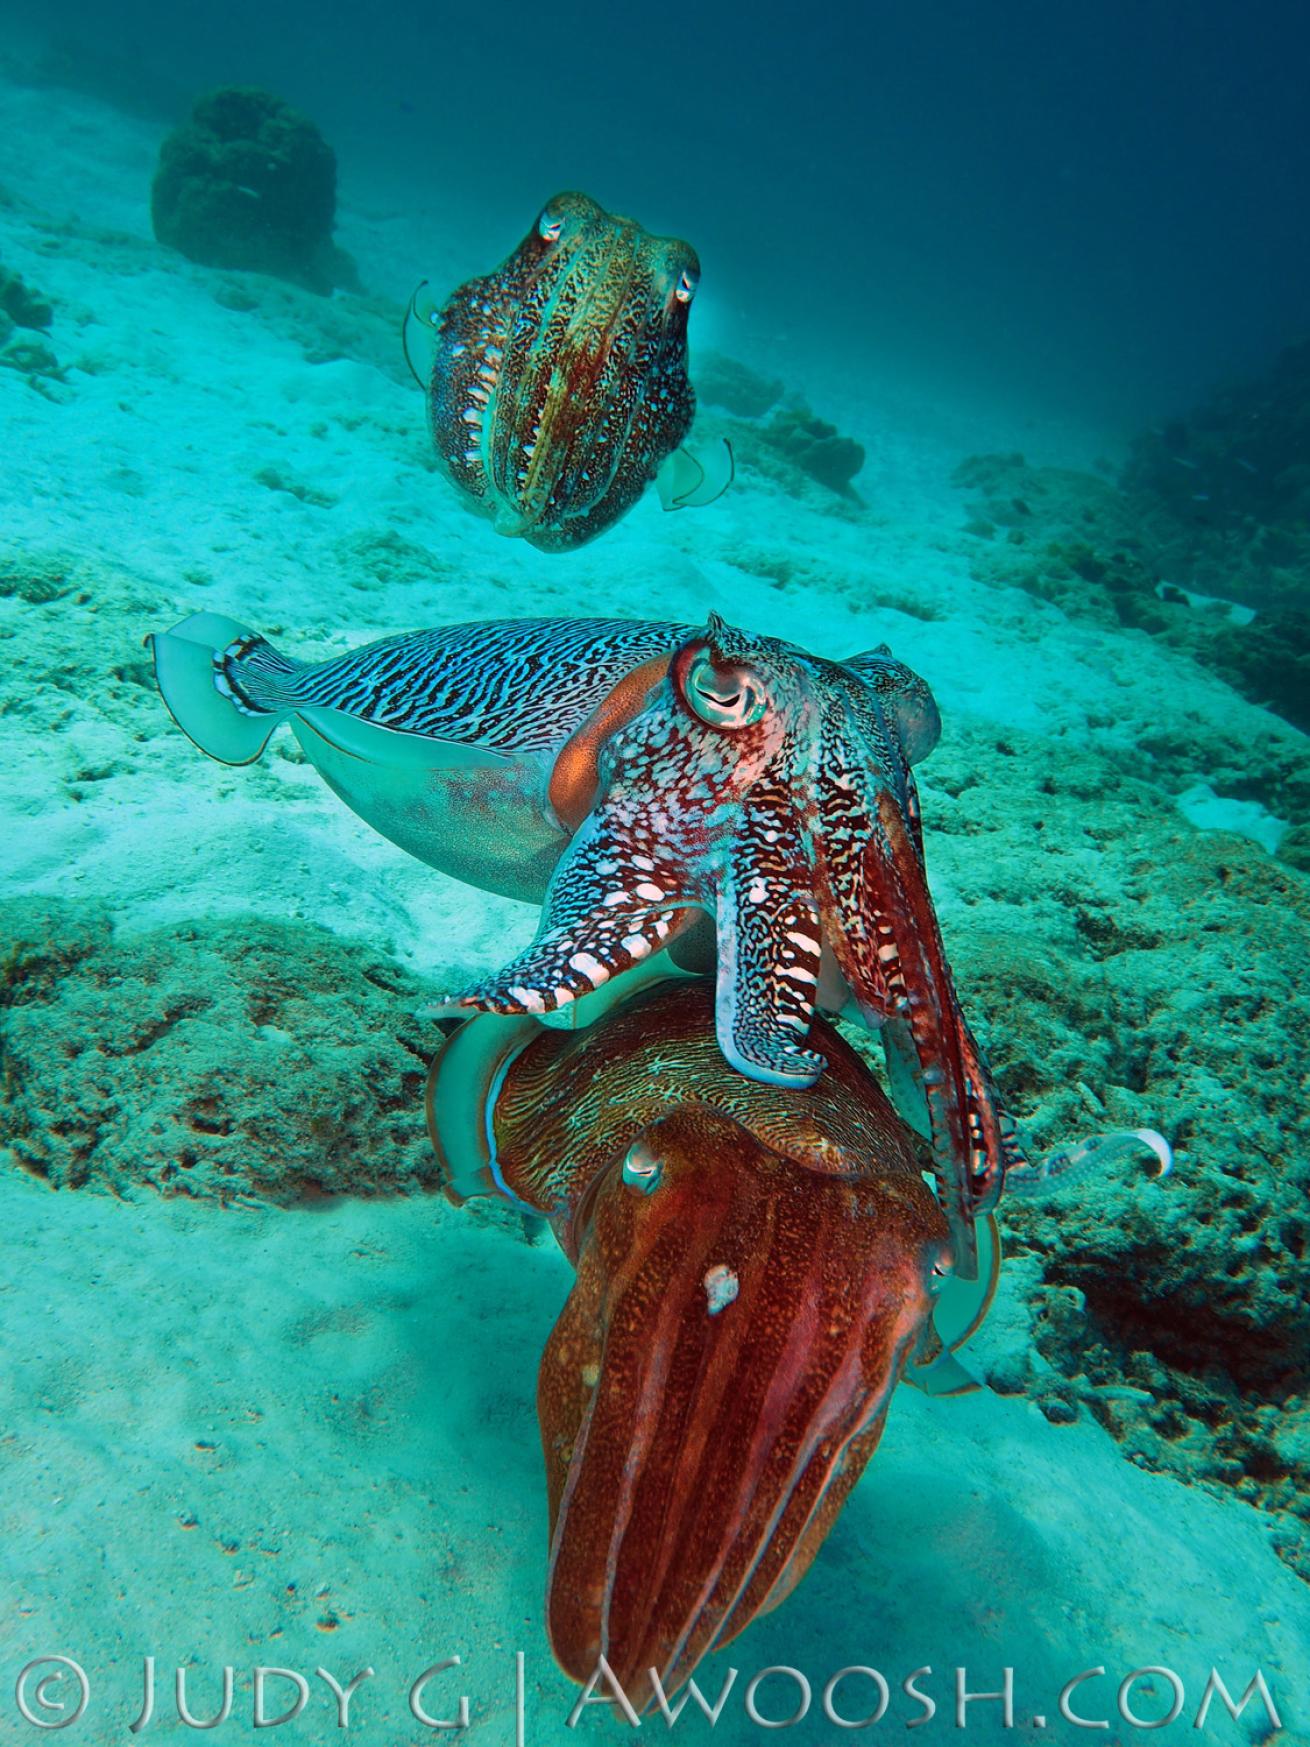 Cuttlefish mating behavior underwater in Thailand